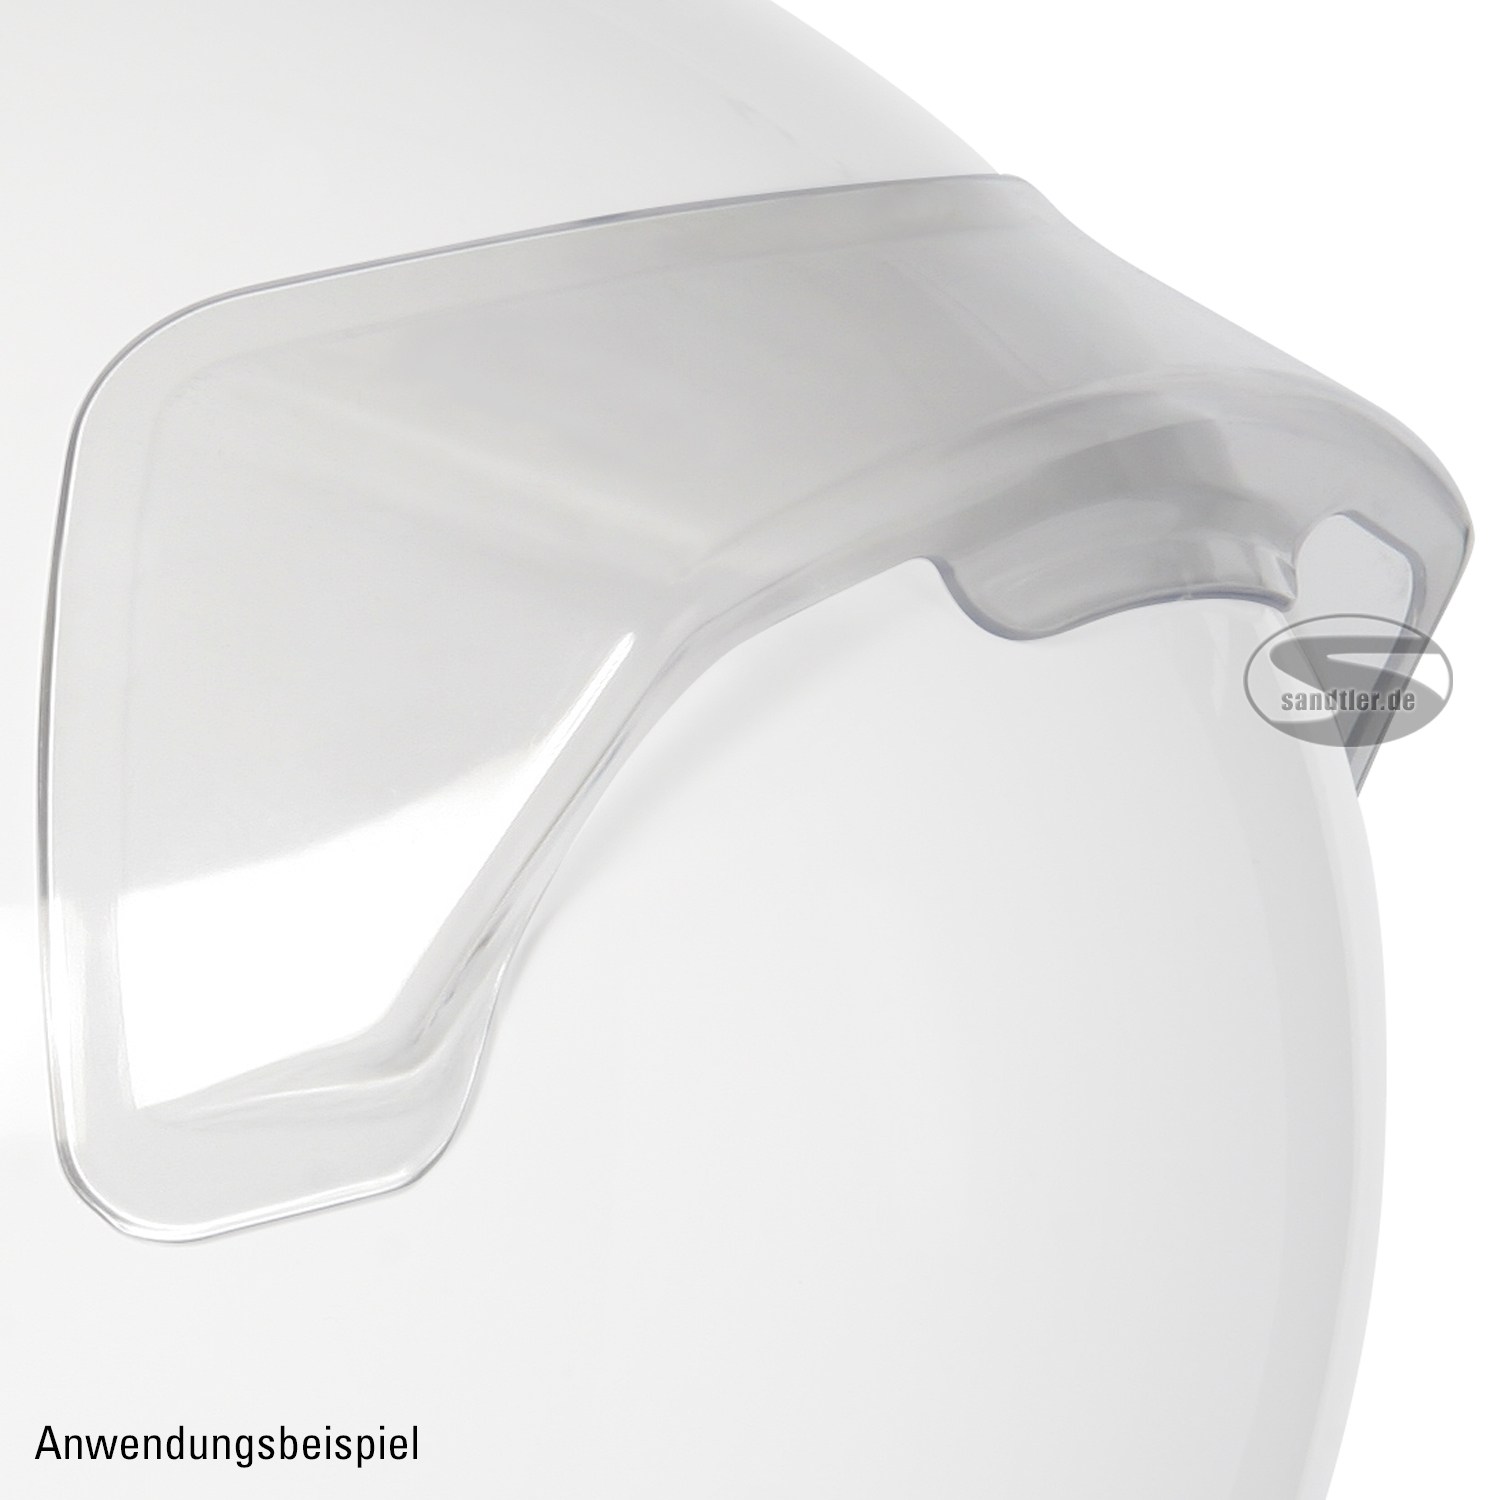 Sandtler Helm Top-Spoiler Kit transparent (412T)